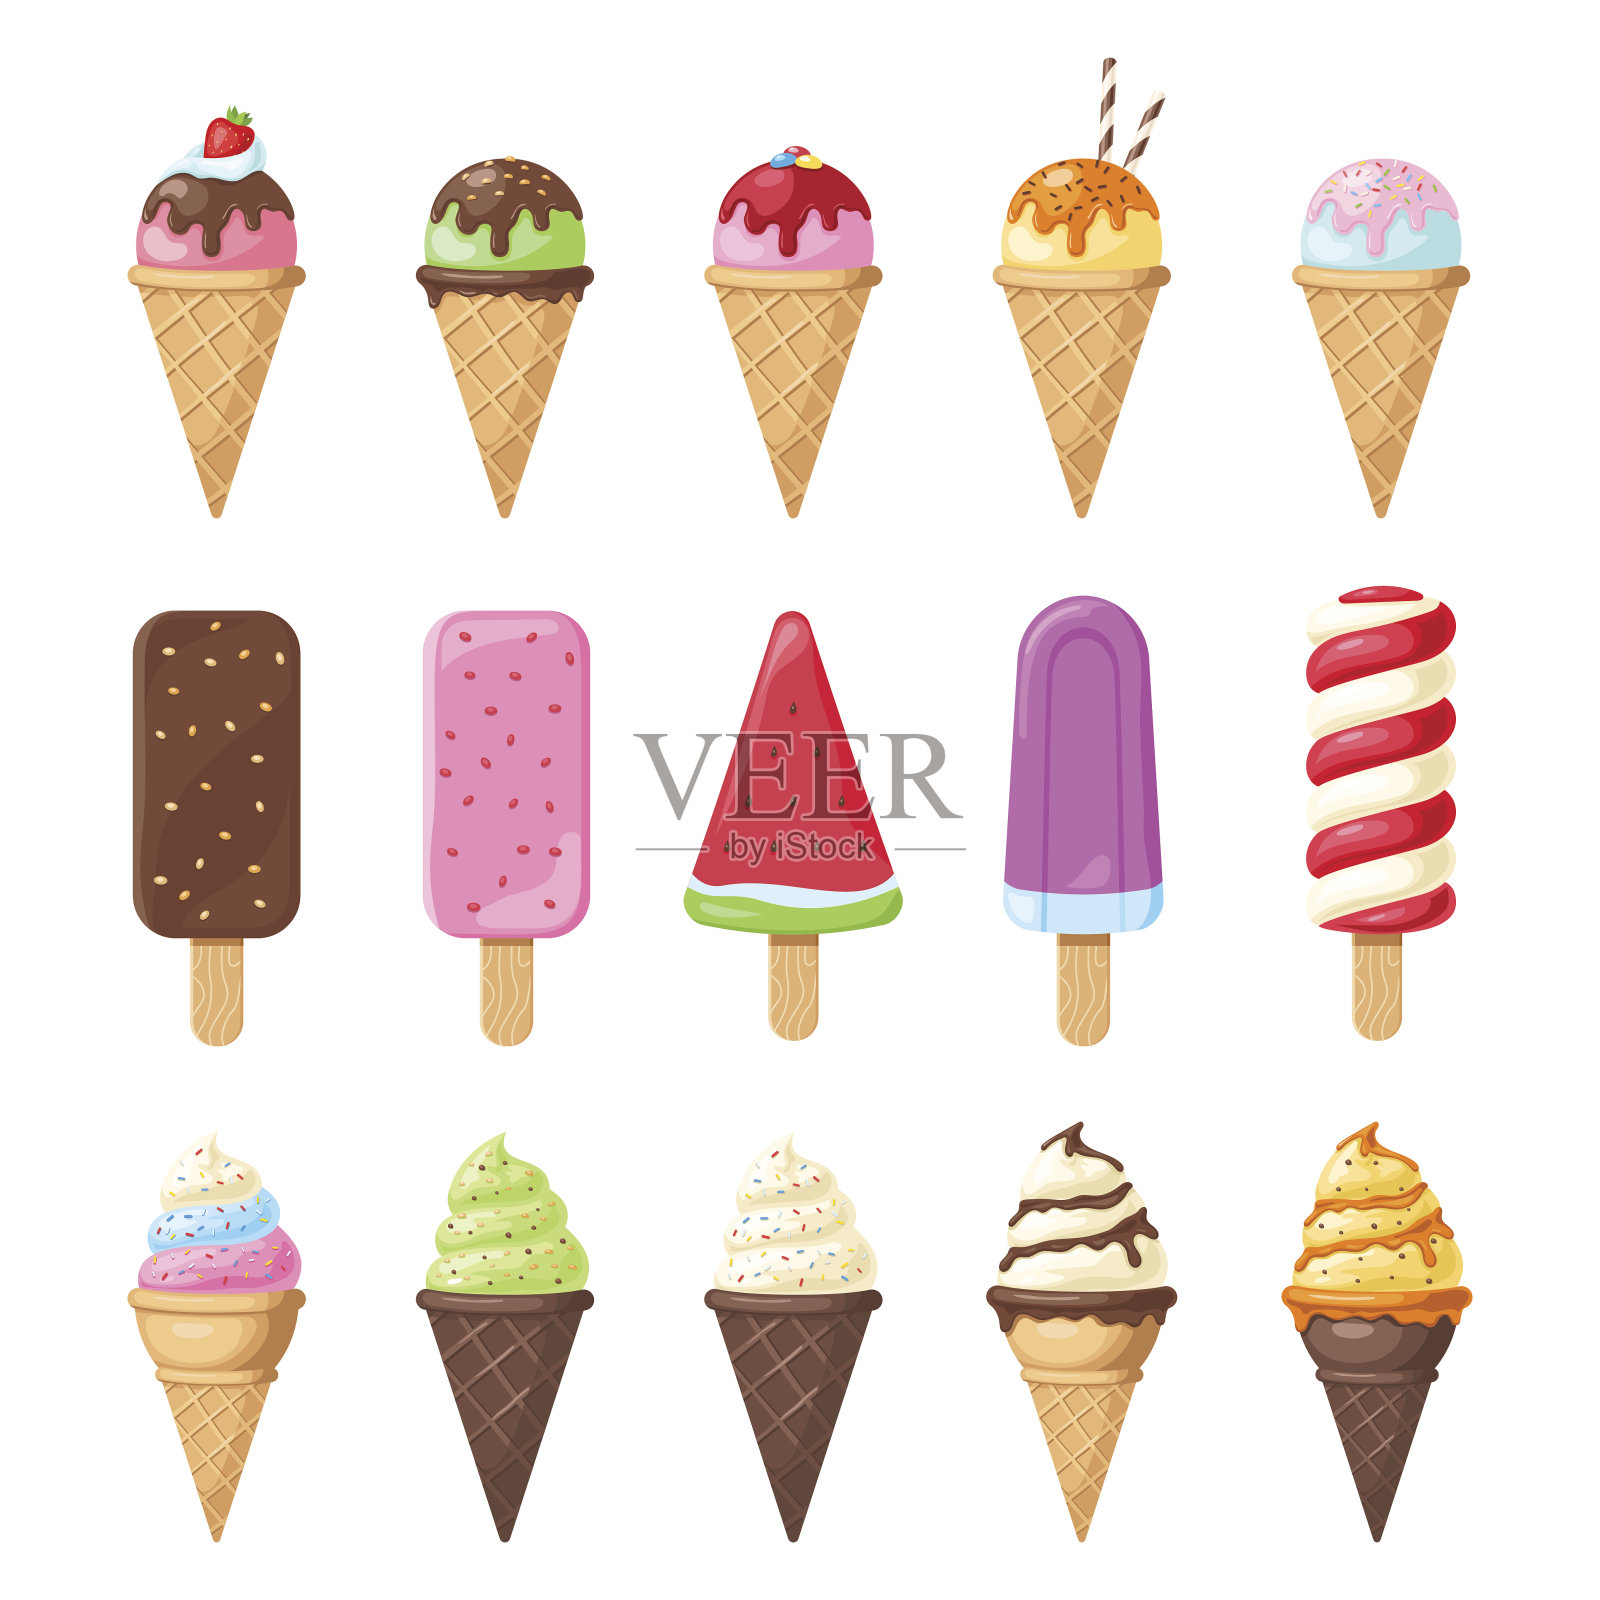 美味多彩的冰淇淋套装设计元素图片